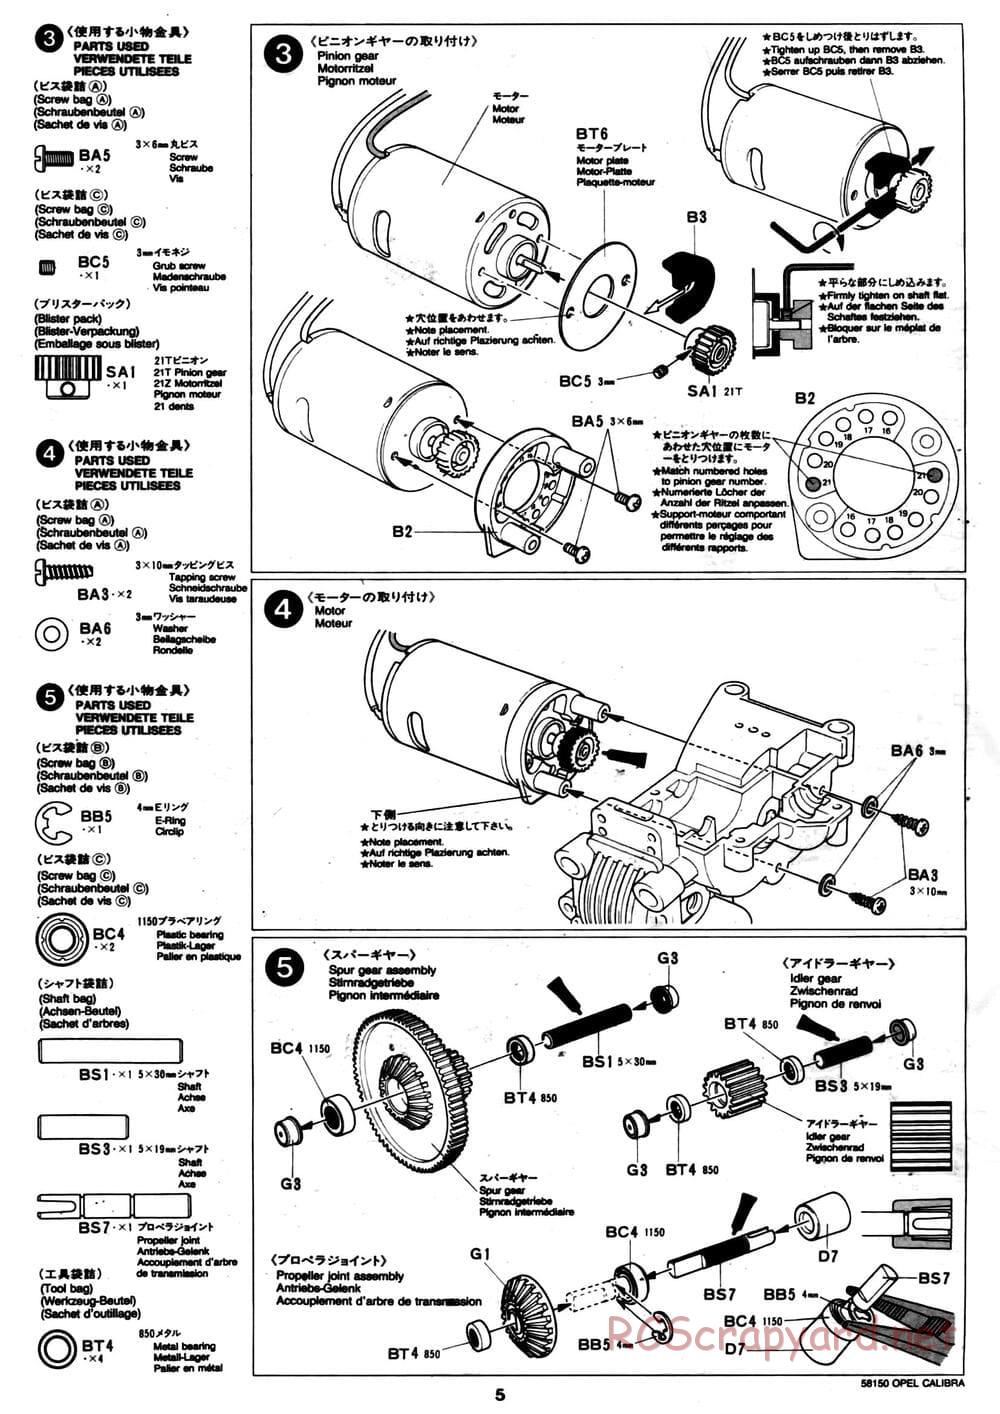 Tamiya - Opel Calibra V6 DTM - TA-02 Chassis - Manual - Page 5